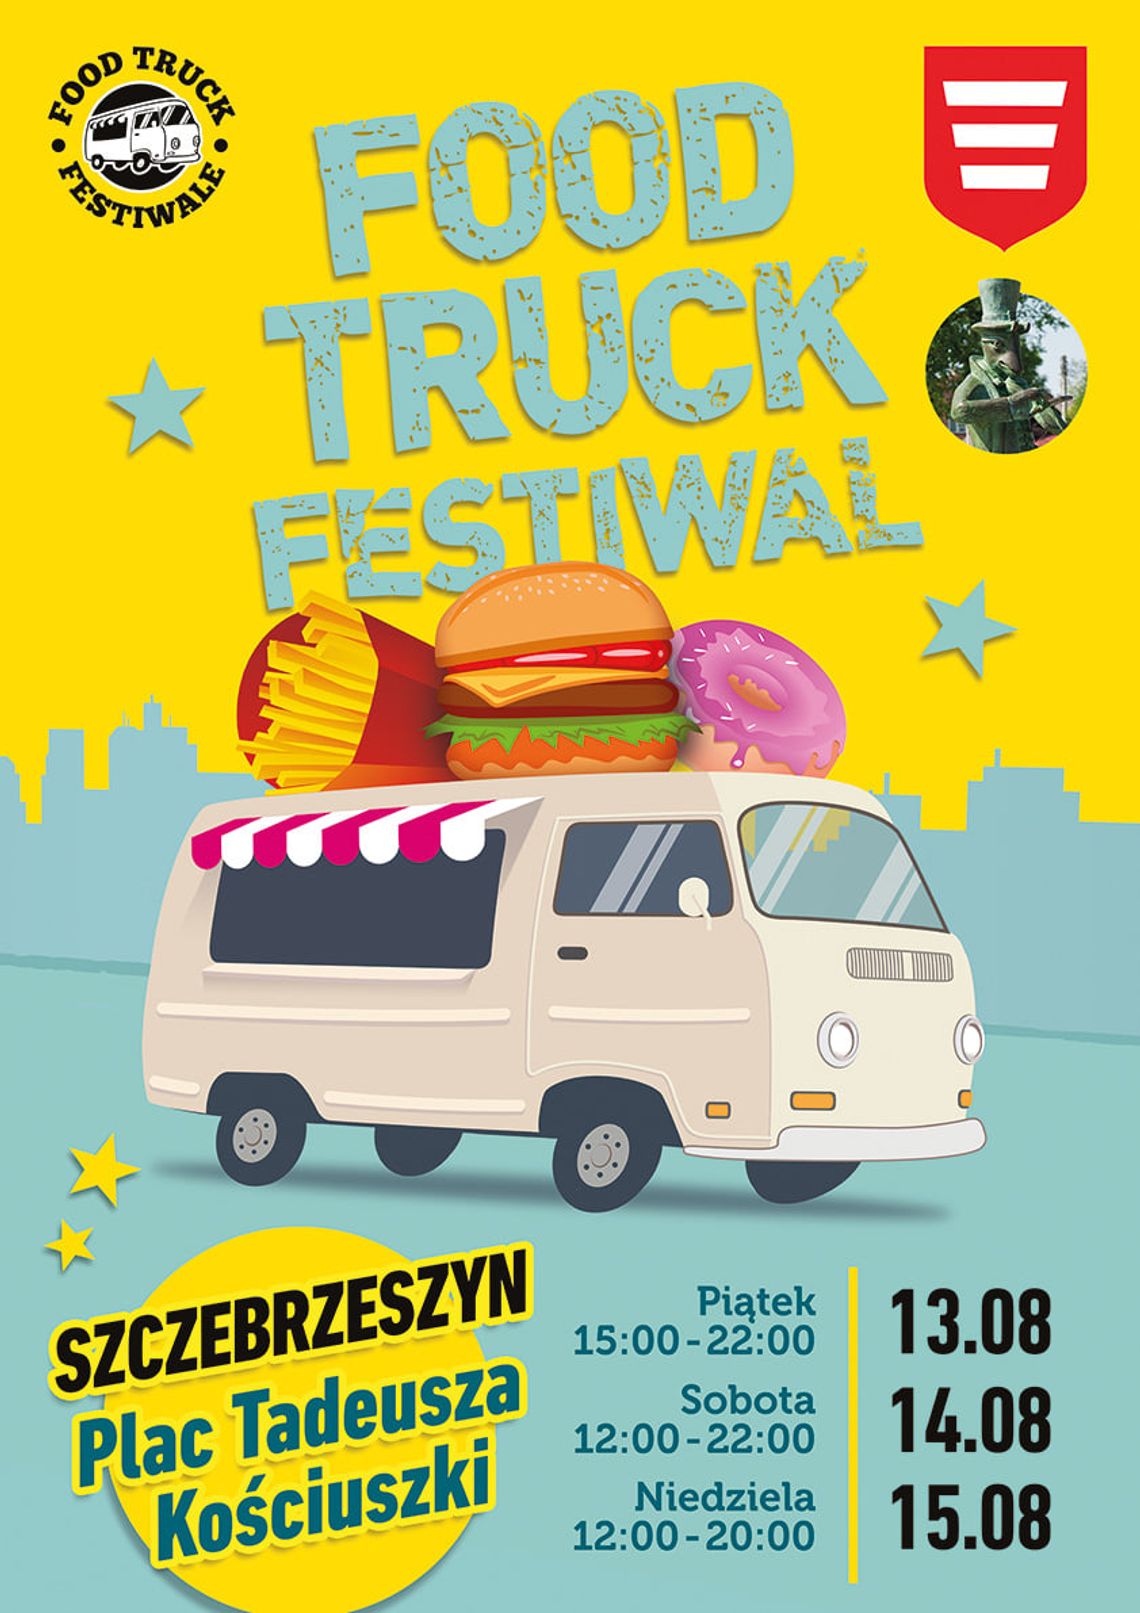 Szczebrzeszyn: Zlot food trucków